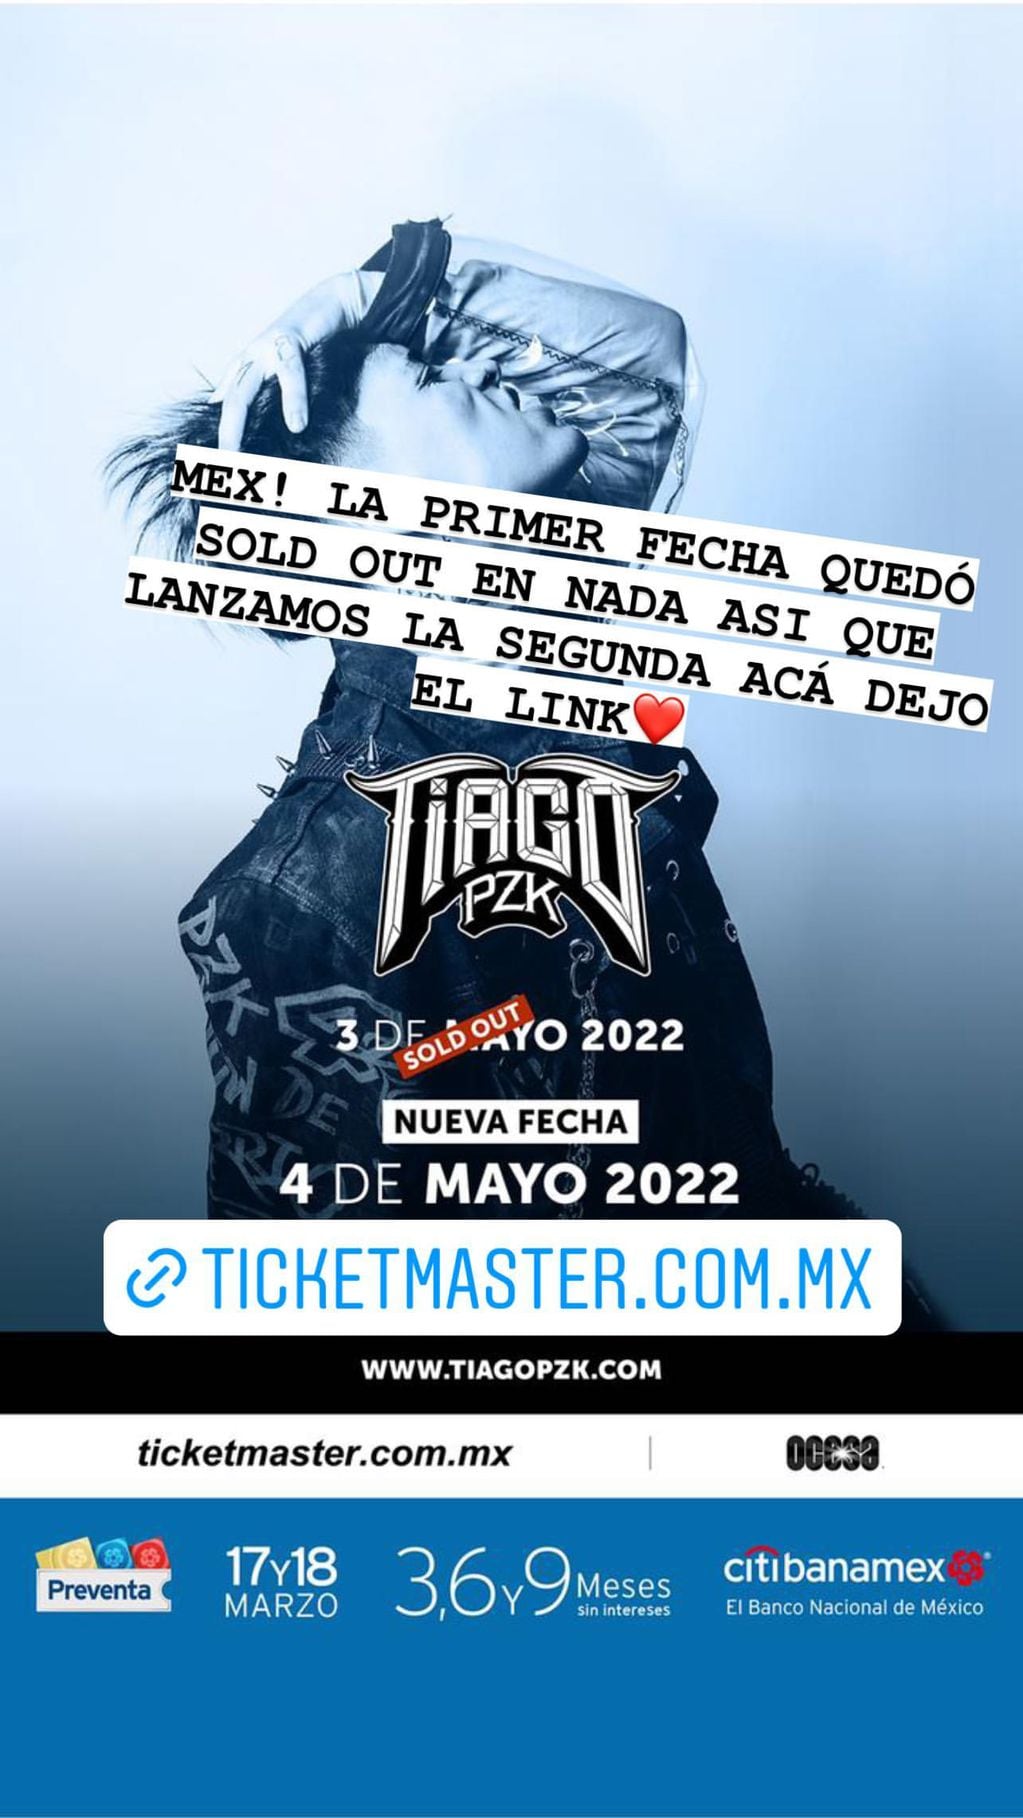 Tiago PZK sumó una nueva función en México.